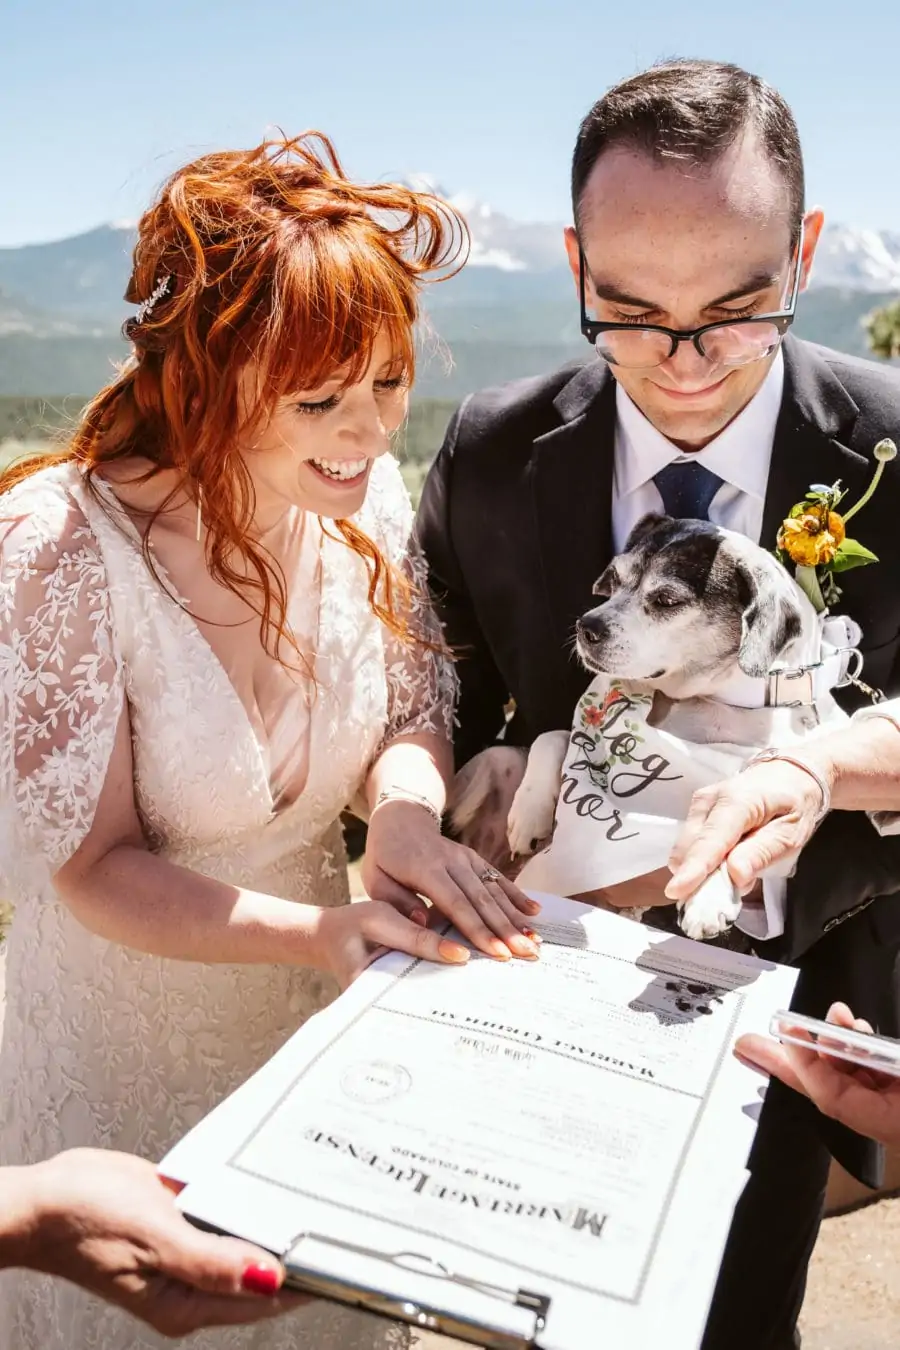 Dog signs marriage license in Colorado